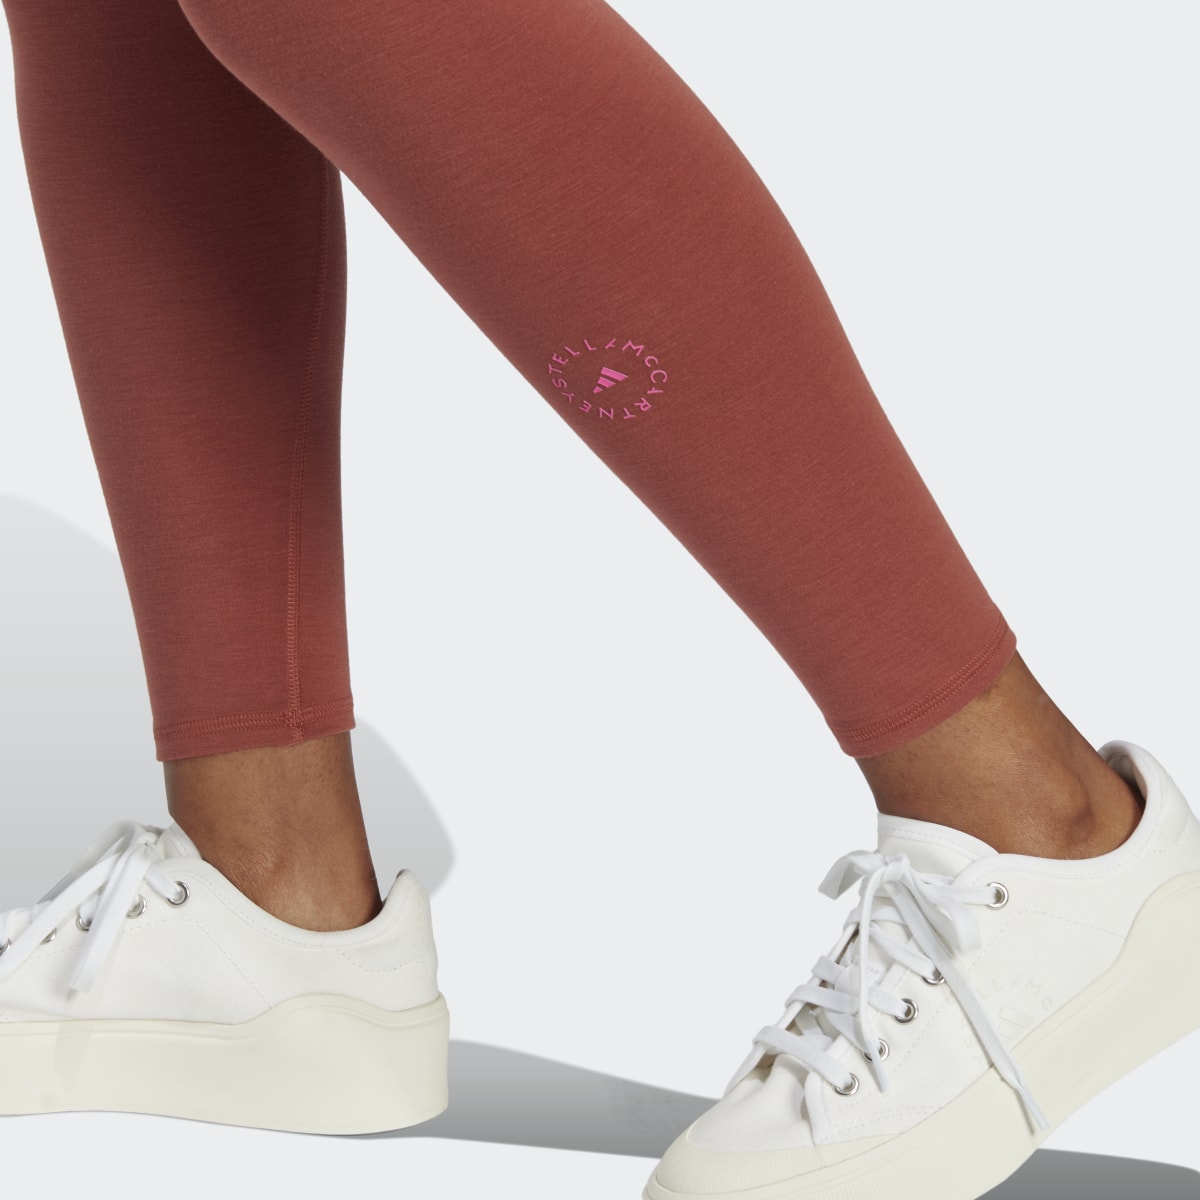 Adidas by Stella McCartney Yoga 7/8-Leggings. 6